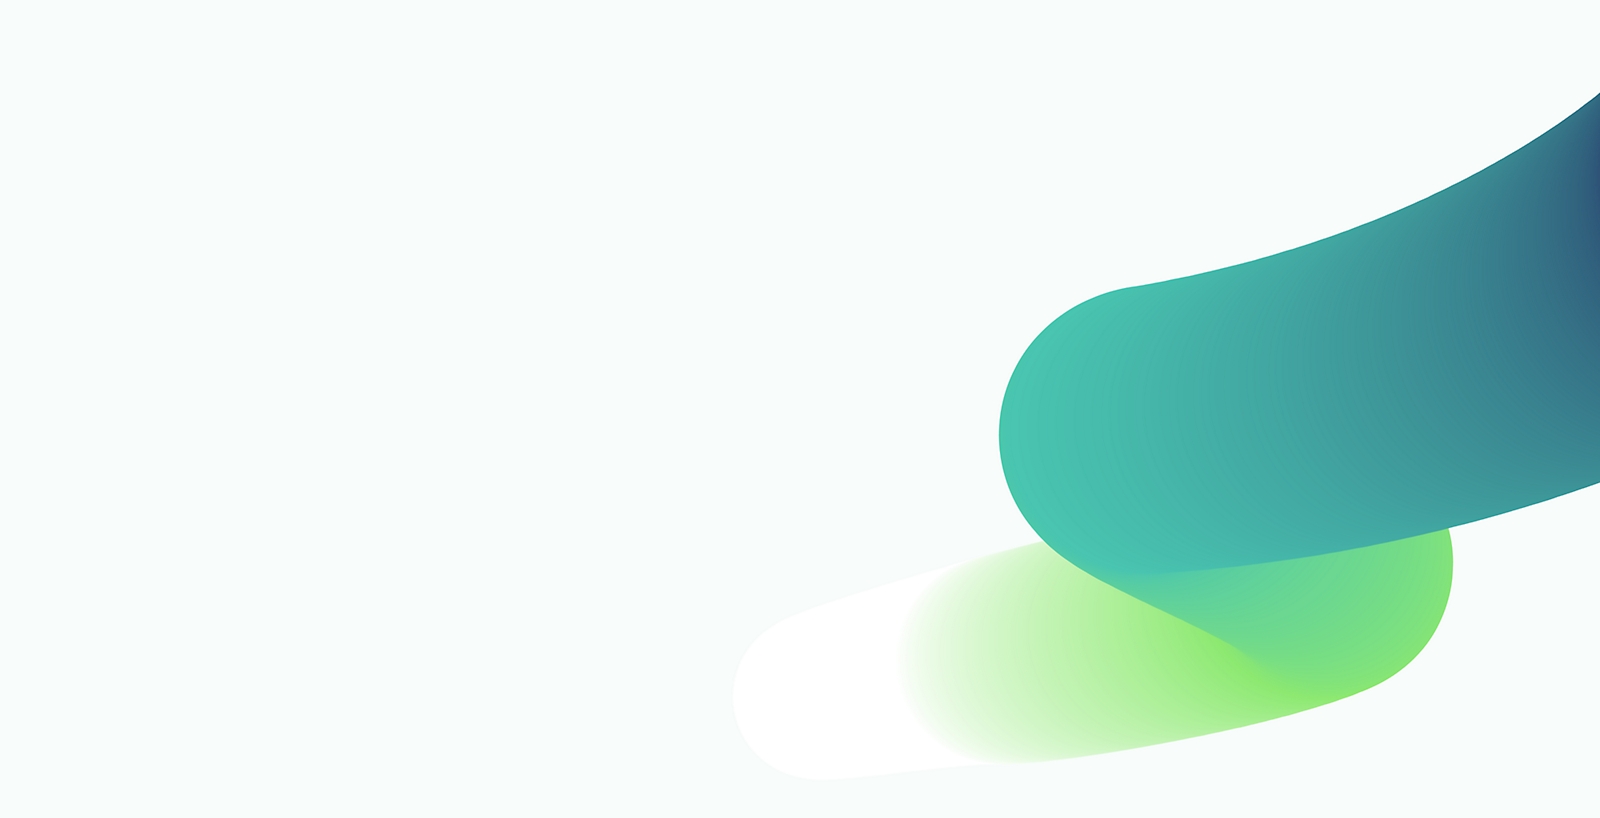 重疊綠色和藍色漸層在淺色背景上建立平滑波浪狀圖樣的抽象背景。